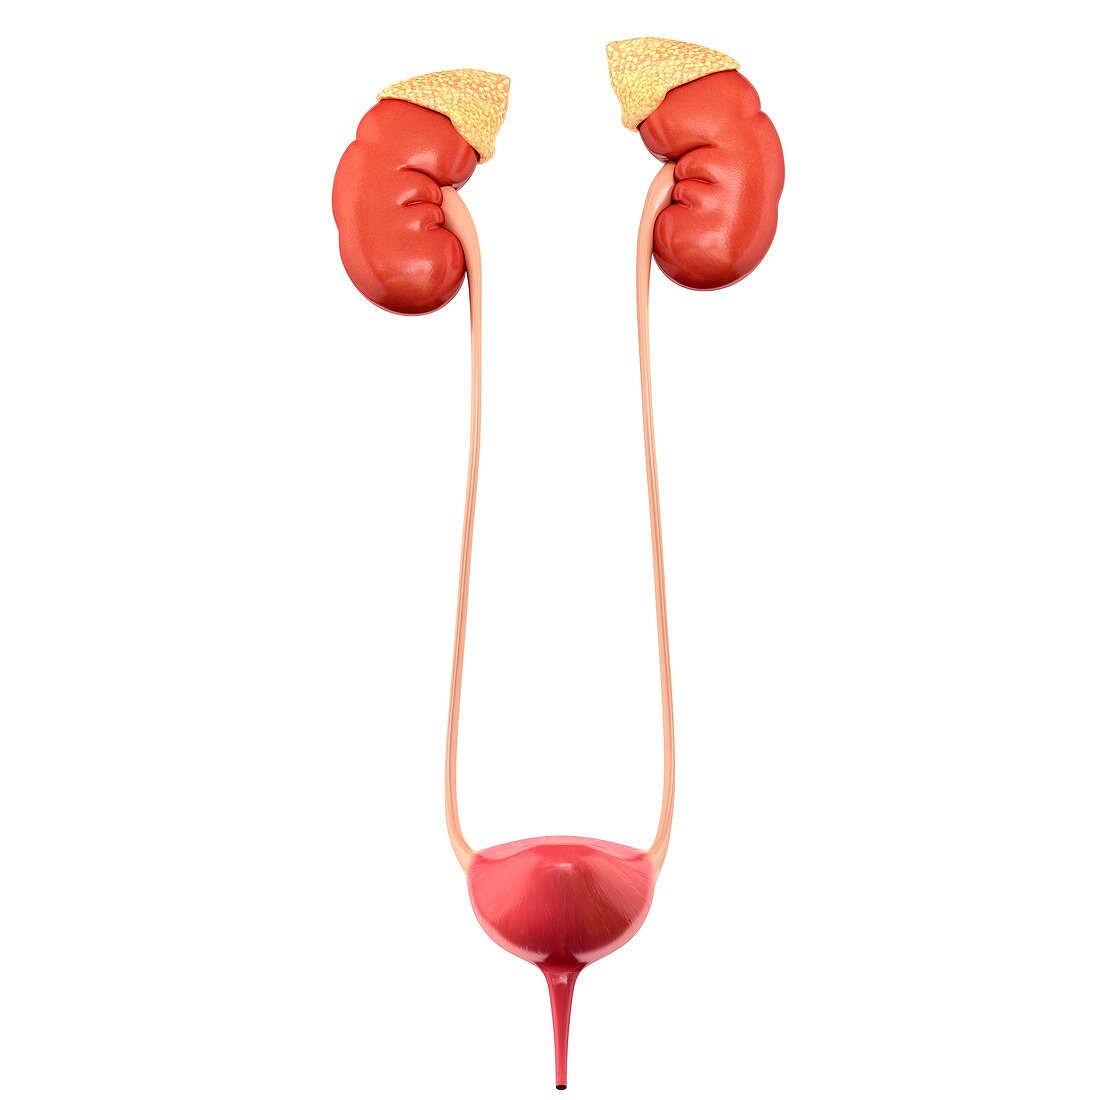 Urinary system organs, illustration